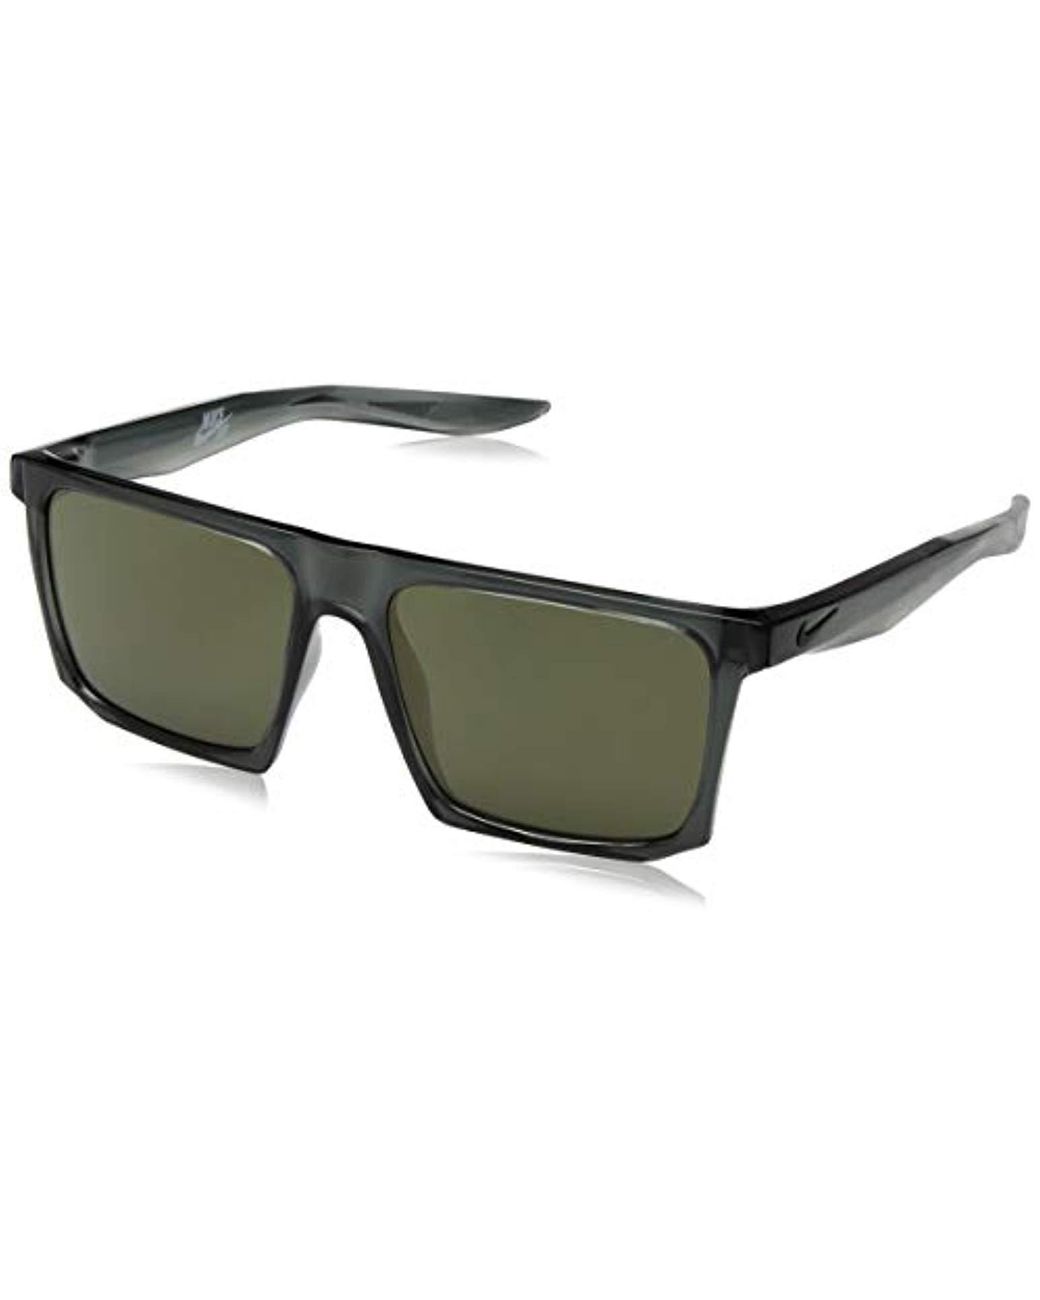 Nike Ledge Sunglasses for Men | Lyst